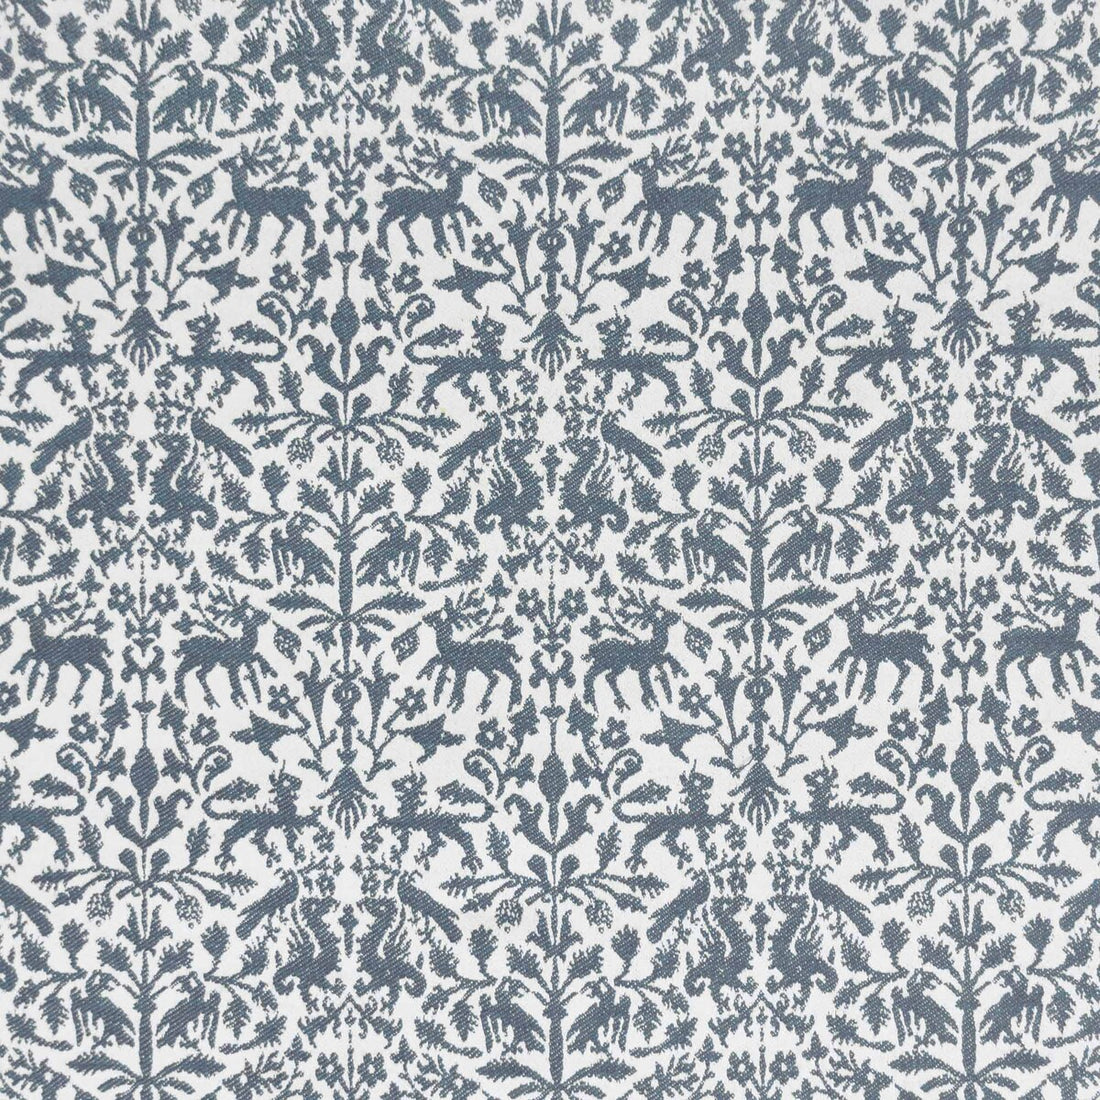 Augusta Emerita fabric in azul color - pattern LCT1112.005.0 - by Gaston y Daniela in the Lorenzo Castillo IX Hesperia collection